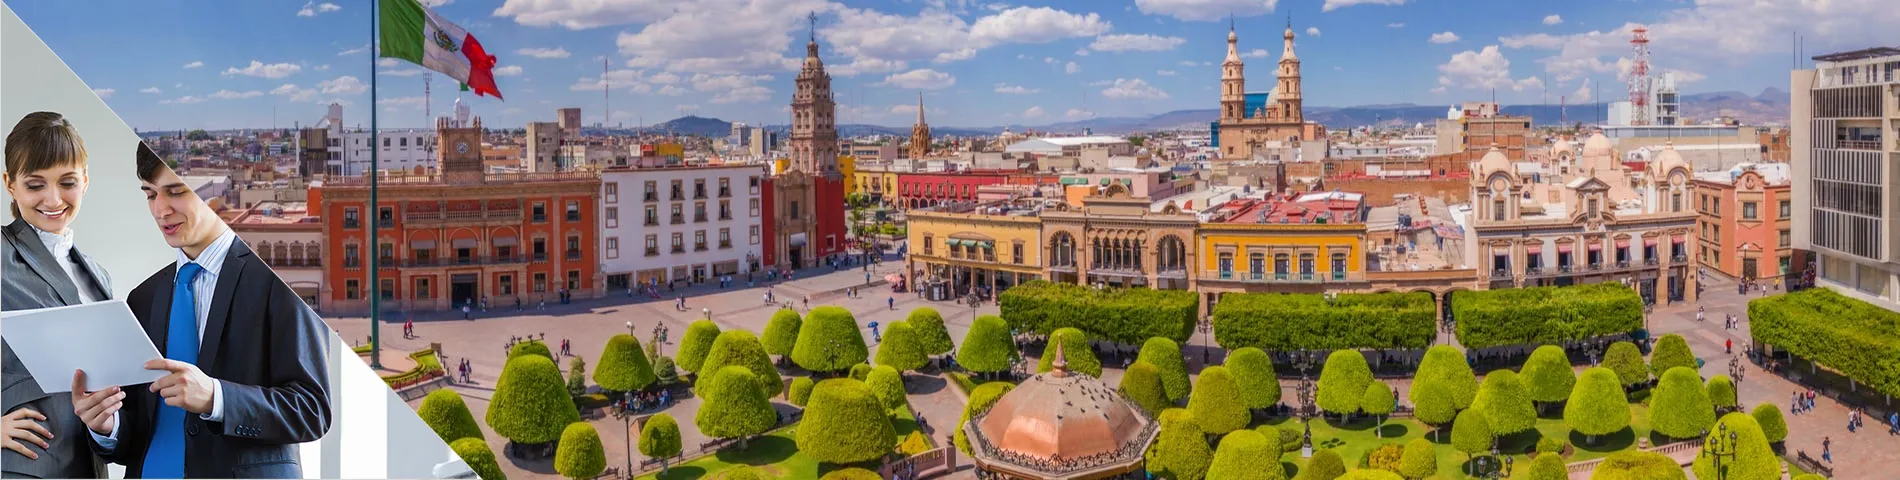 Guanajuato - 